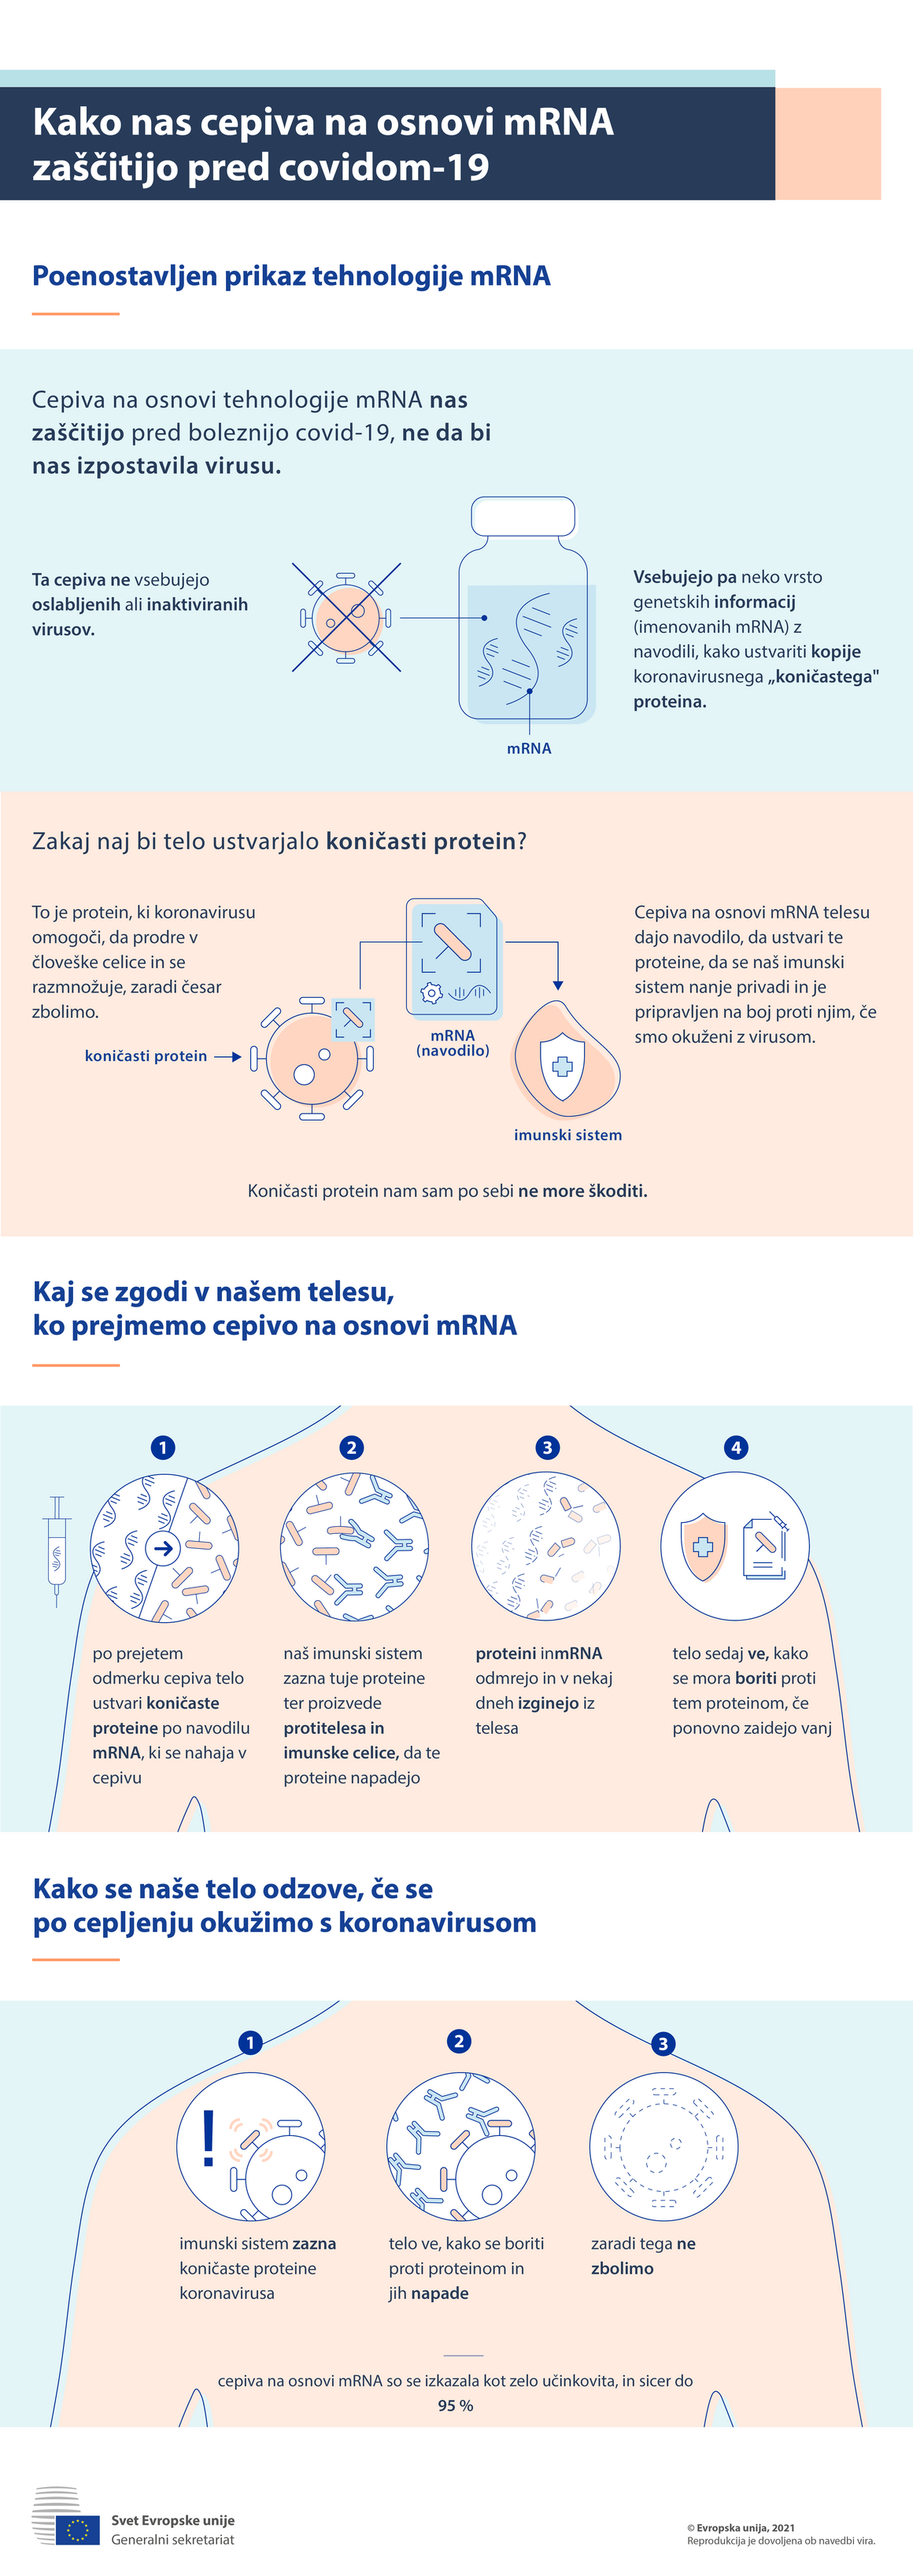 Infografika – Kako nas cepiva na osnovi mRNK zaščitijo pred covidom-19?